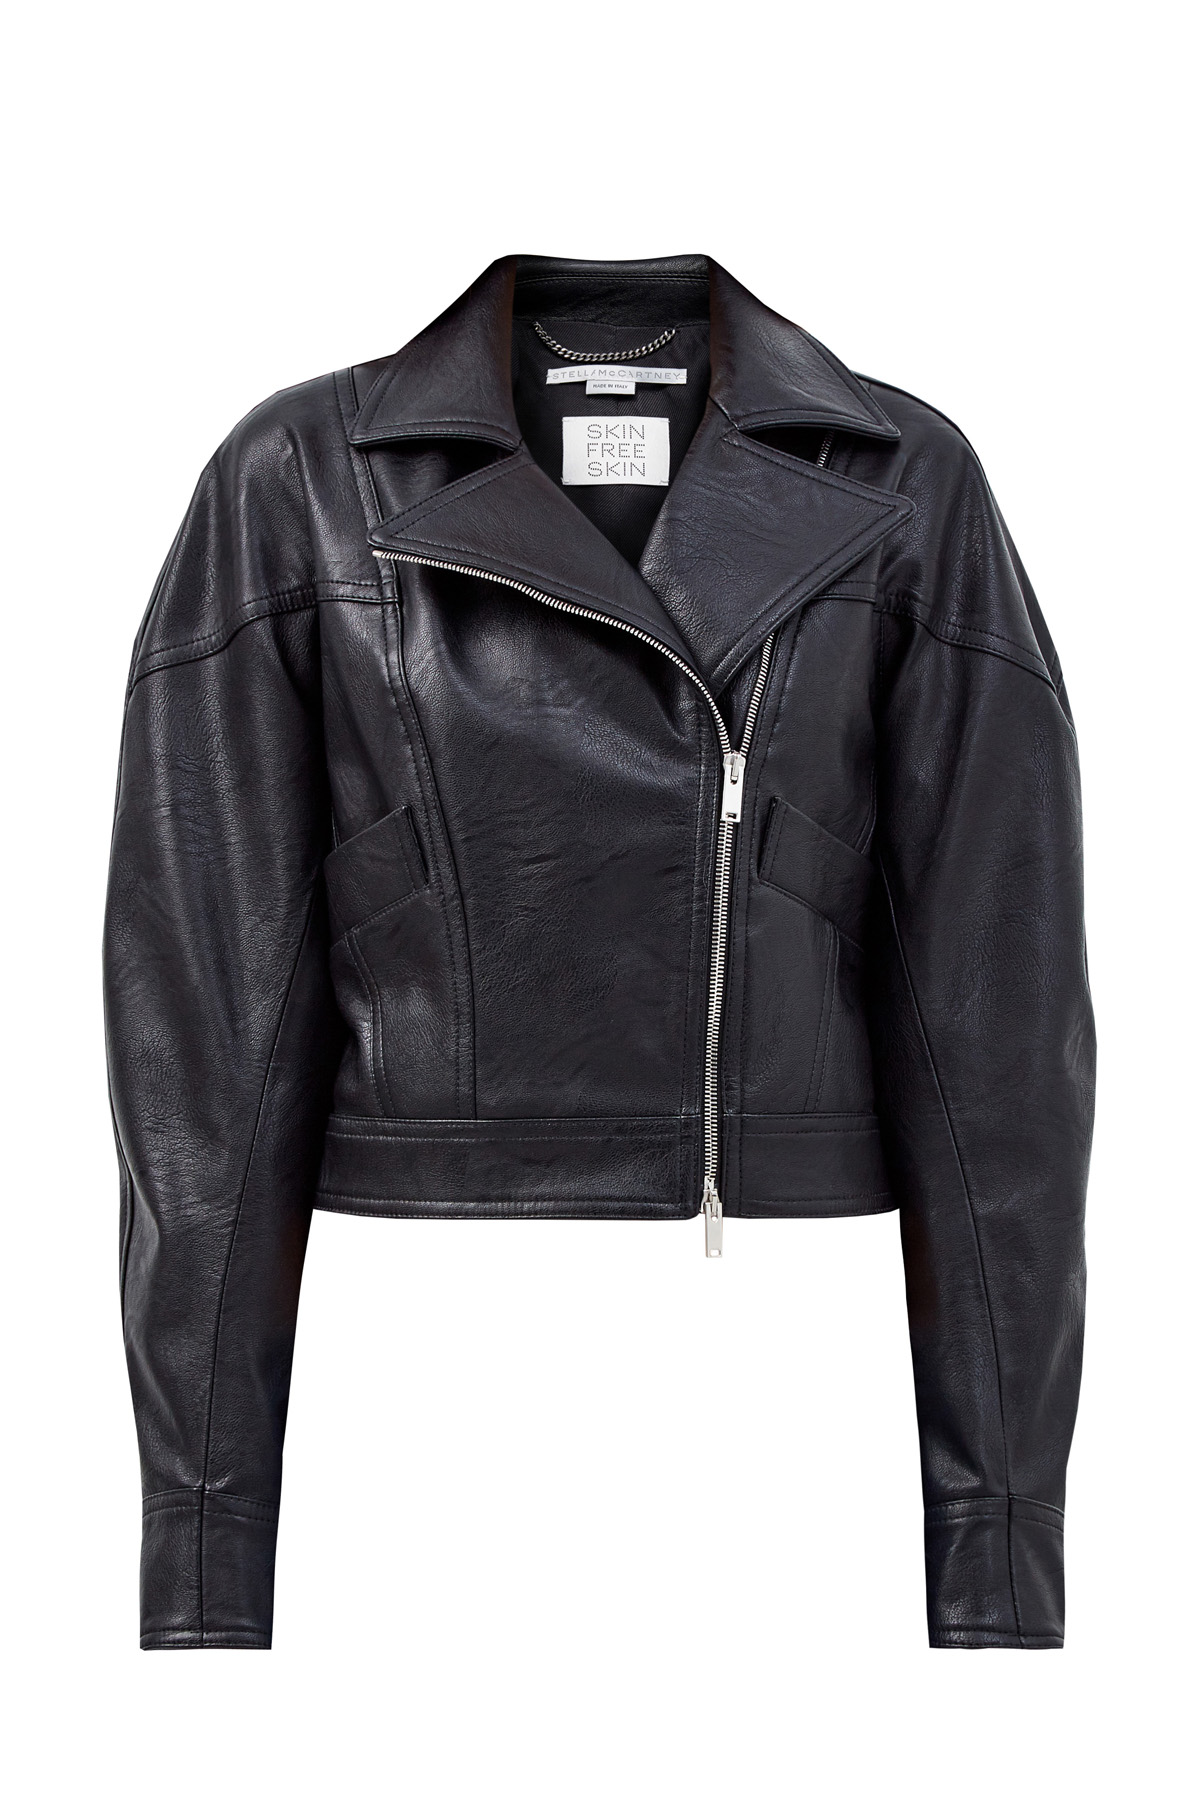 Байкерская куртка Skin Free Skin с объемными рукавами STELLA McCARTNEY черного цвета